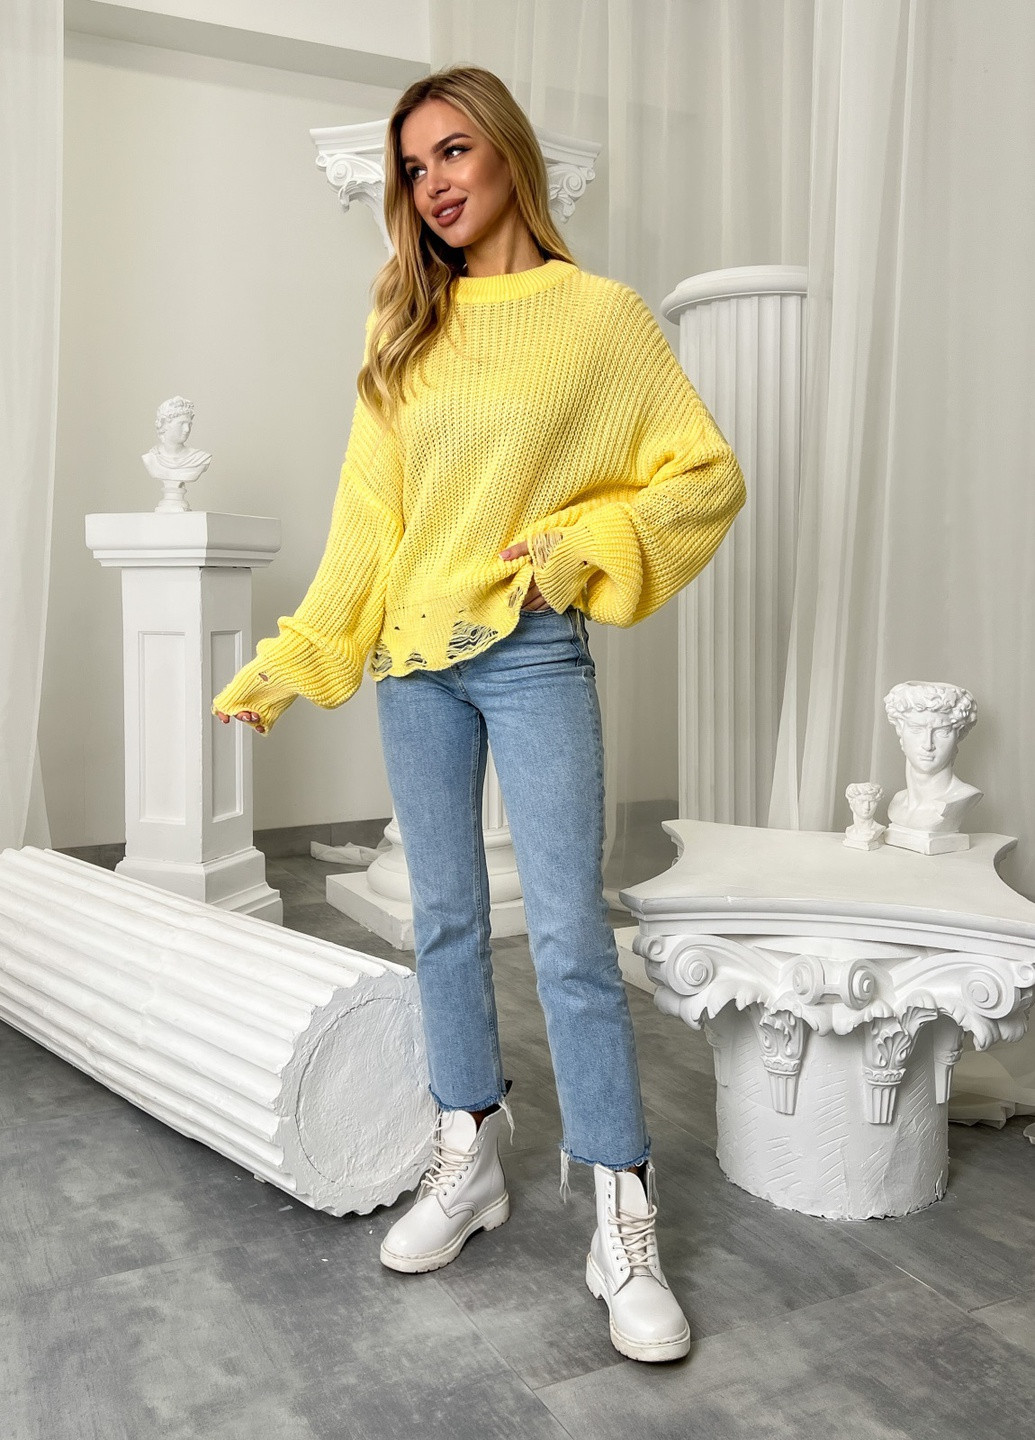 Жовтий демісезонний светр джемпер Larionoff